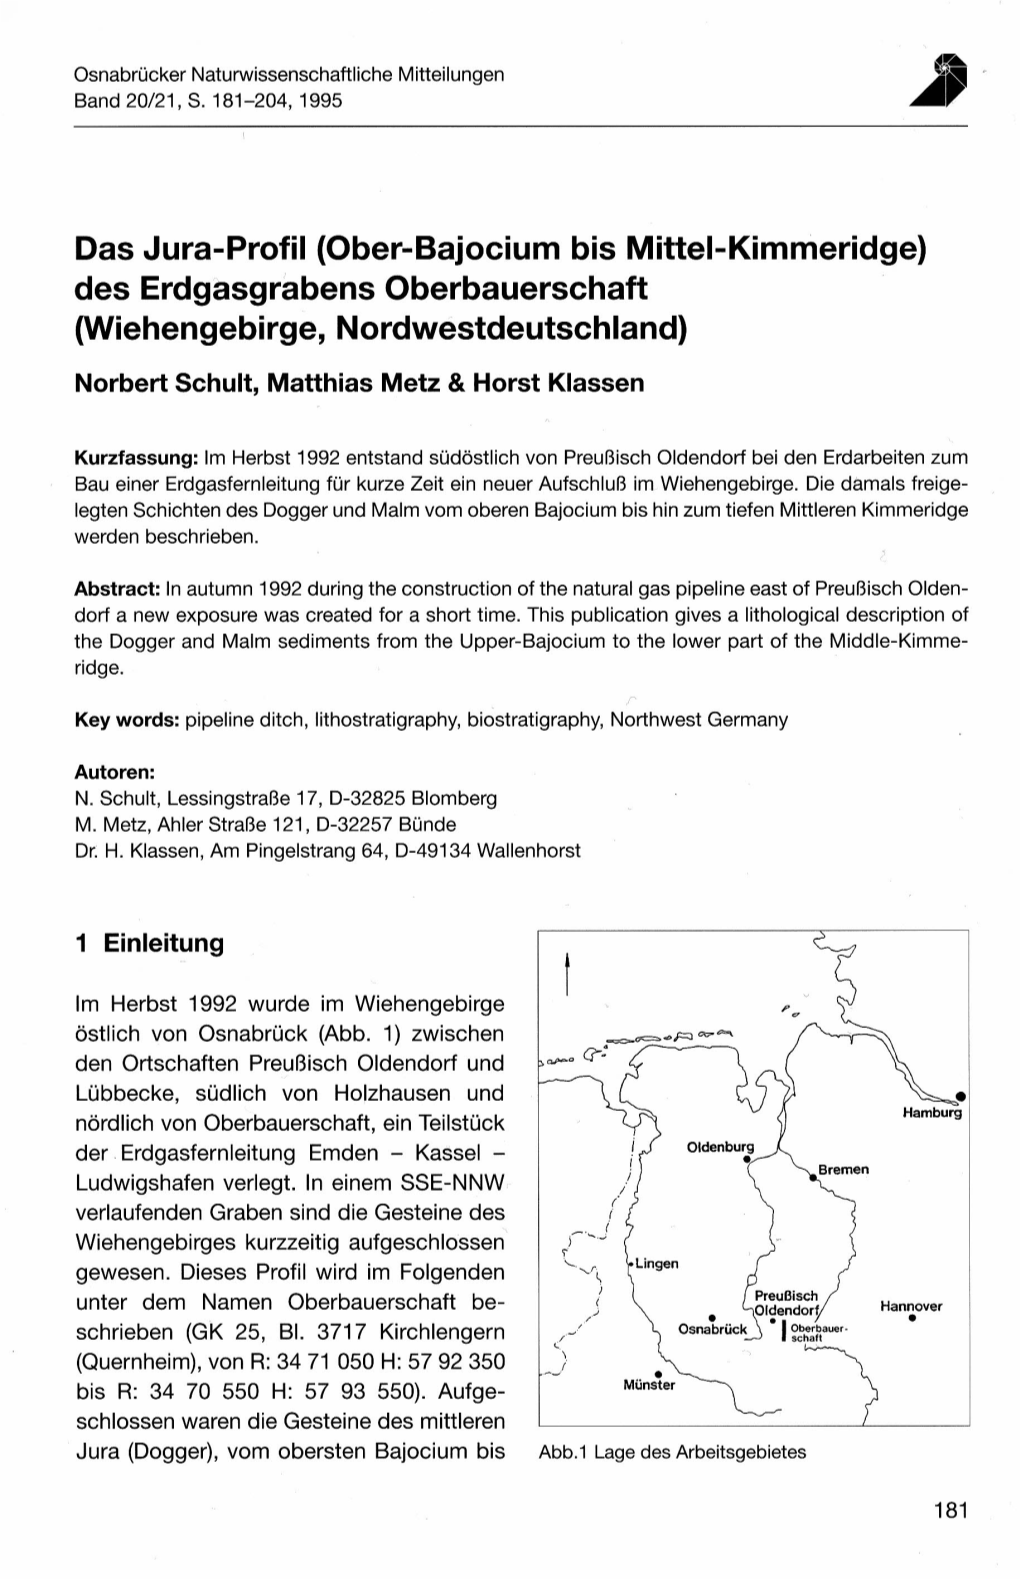 Das Jura-Profil (Ober-Bajocium Bis Mittel-Kimmeridge) Des Erdgasgrabens Oberbauerschaft (Wiehengebirge, Nordwestdeutschland) •